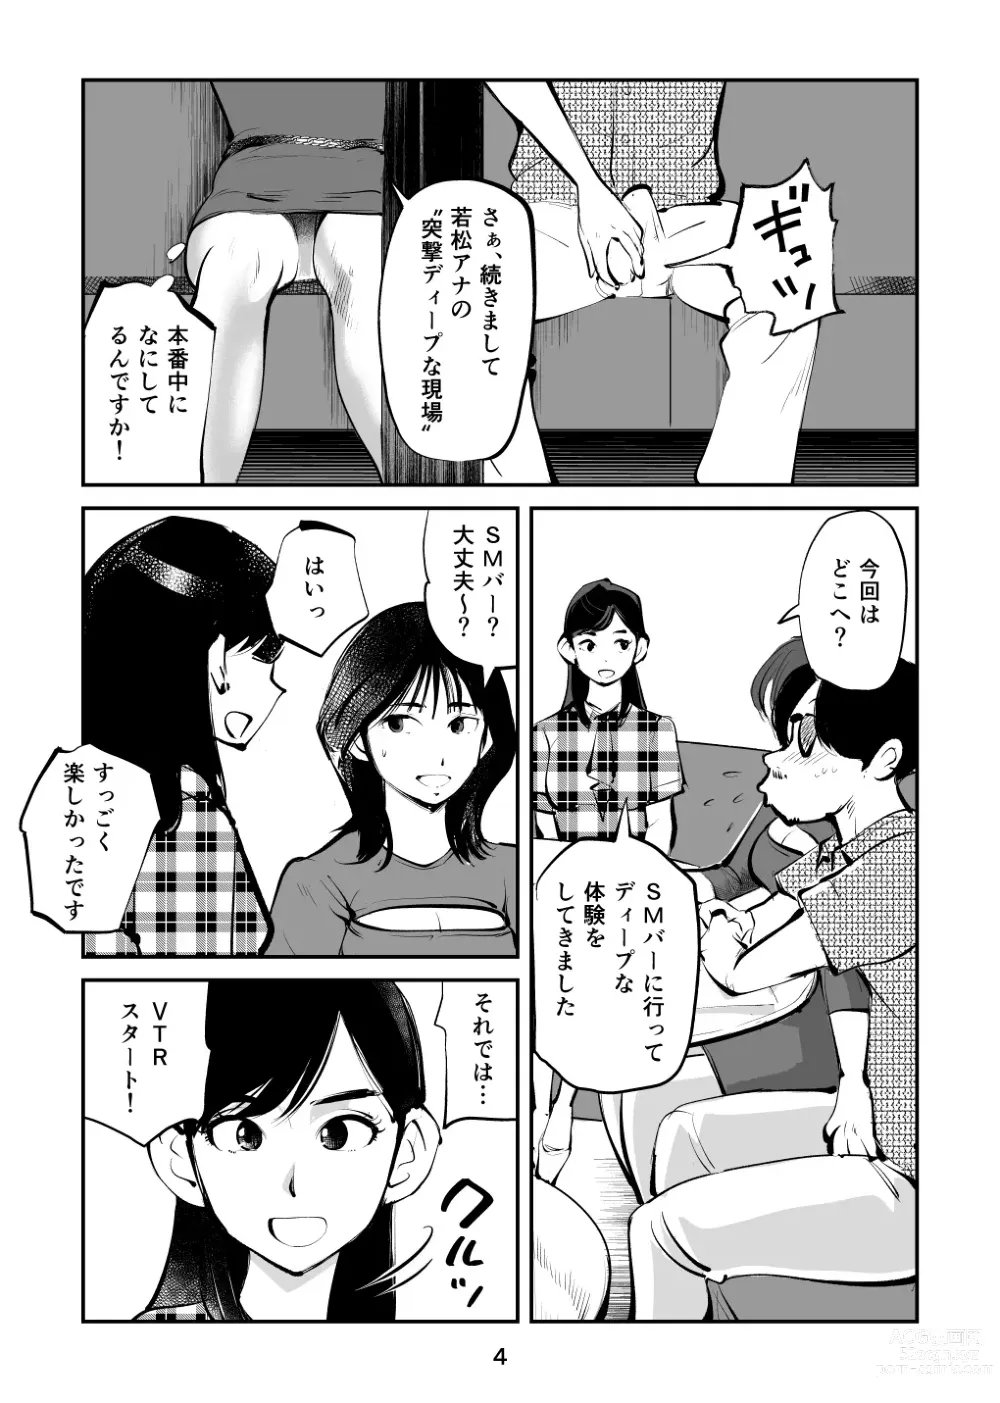 Page 4 of doujinshi Kintama o tsubushita joshi-ana